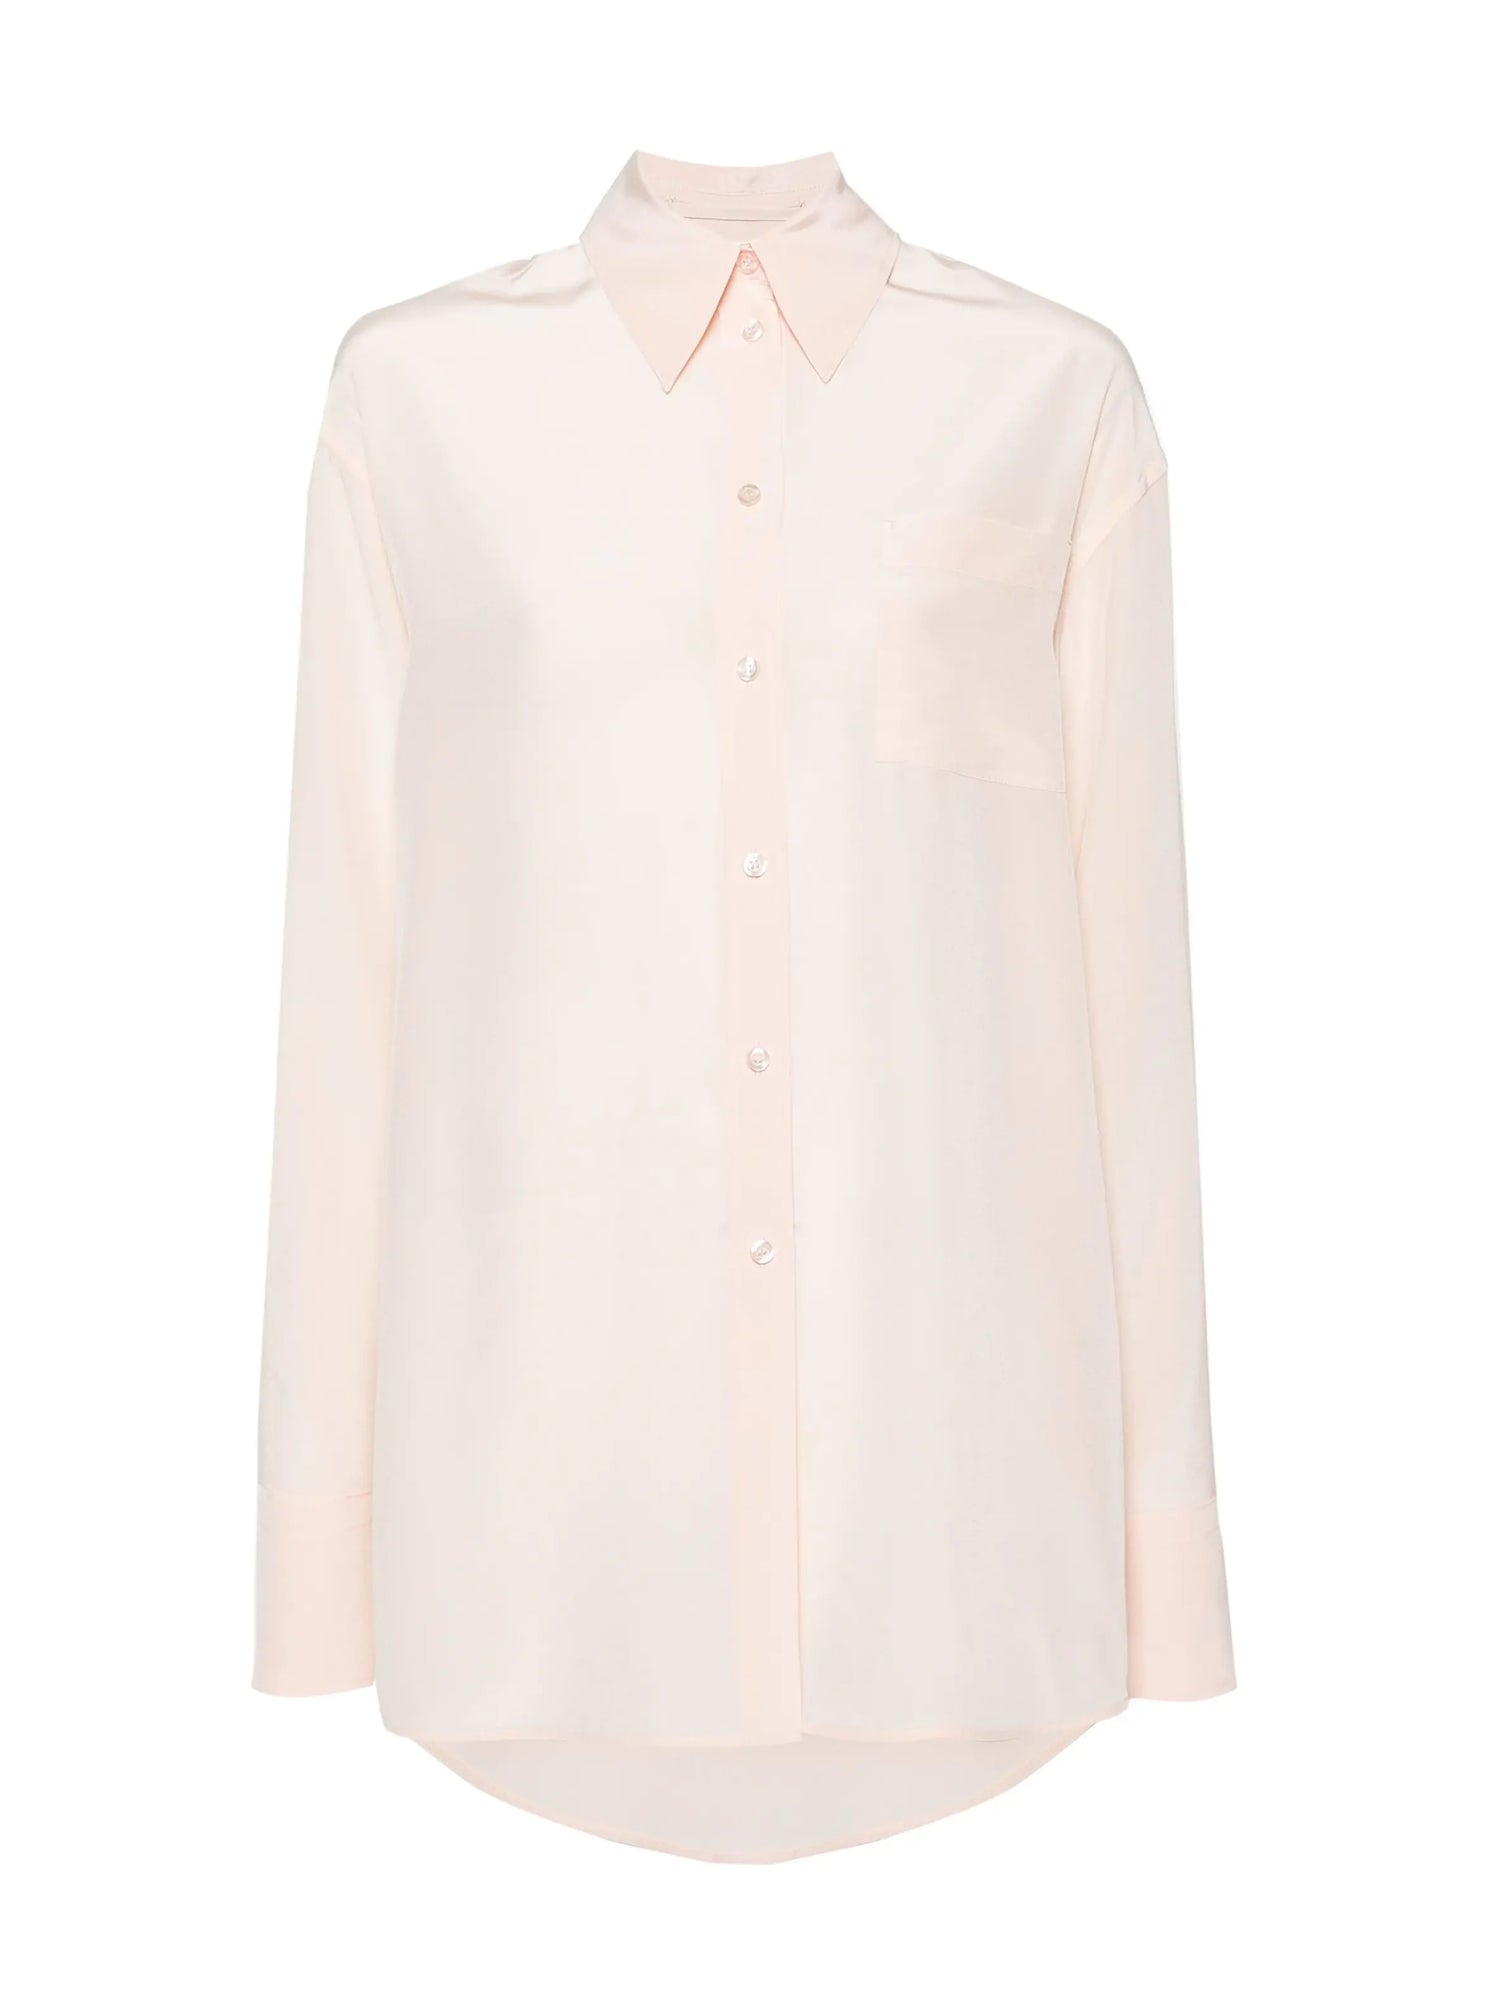 ROVIGO silk crepe shirt, powder pink